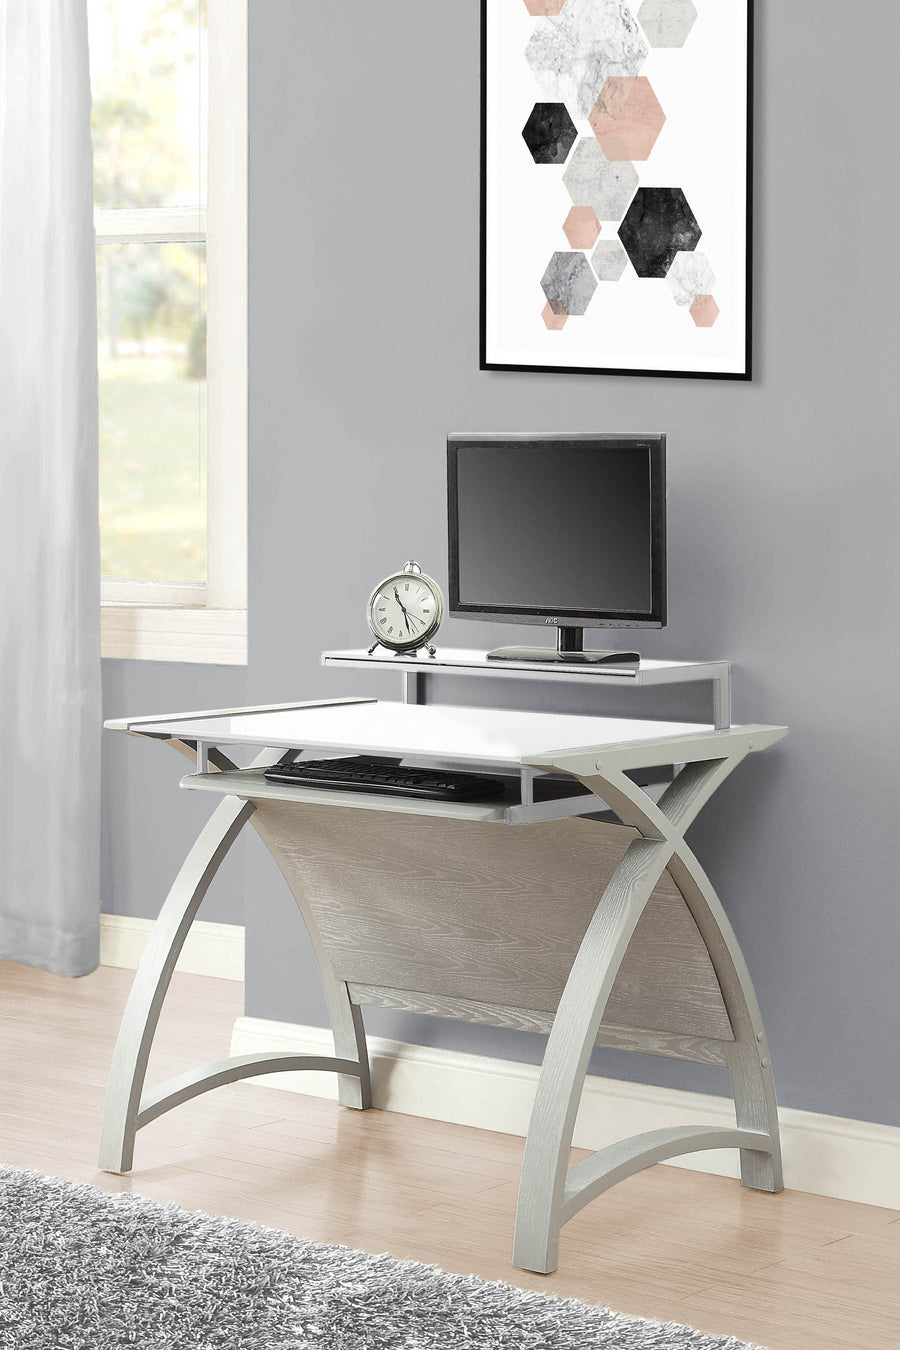 PC201 Helsinki 900 Desk (Grey)